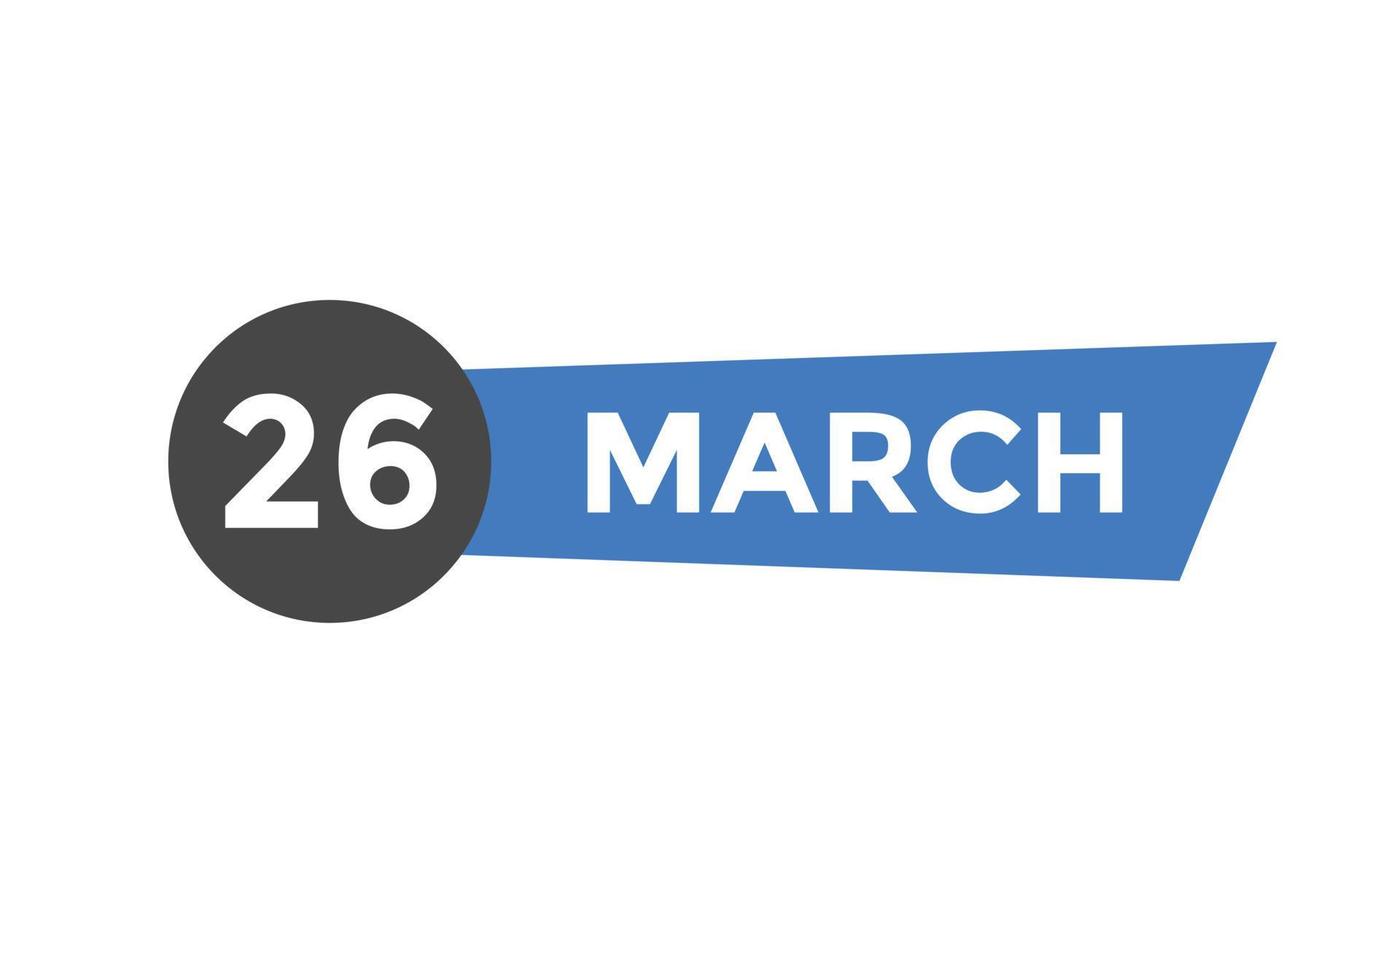 26 de março lembrete de calendário. 26 de março modelo de ícone de calendário diário. modelo de design de ícone de calendário 26 de março. ilustração vetorial vetor